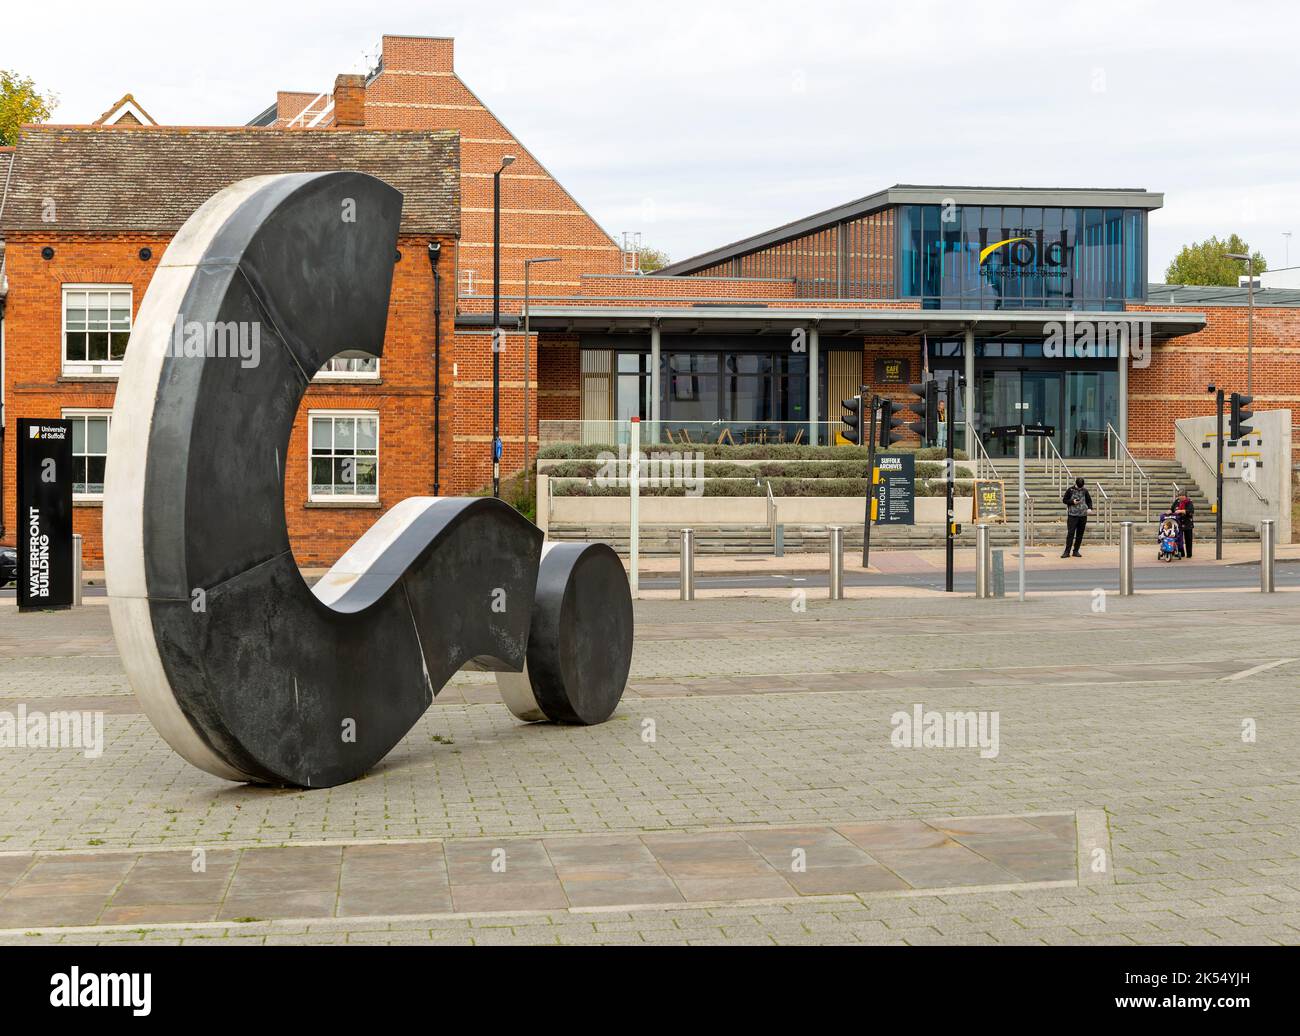 Sculpture de marque d'interrogation par Langlands et Bell, le bâtiment d'archives de Hold, Ipswich, Suffolk, Angleterre, Royaume-Uni Banque D'Images